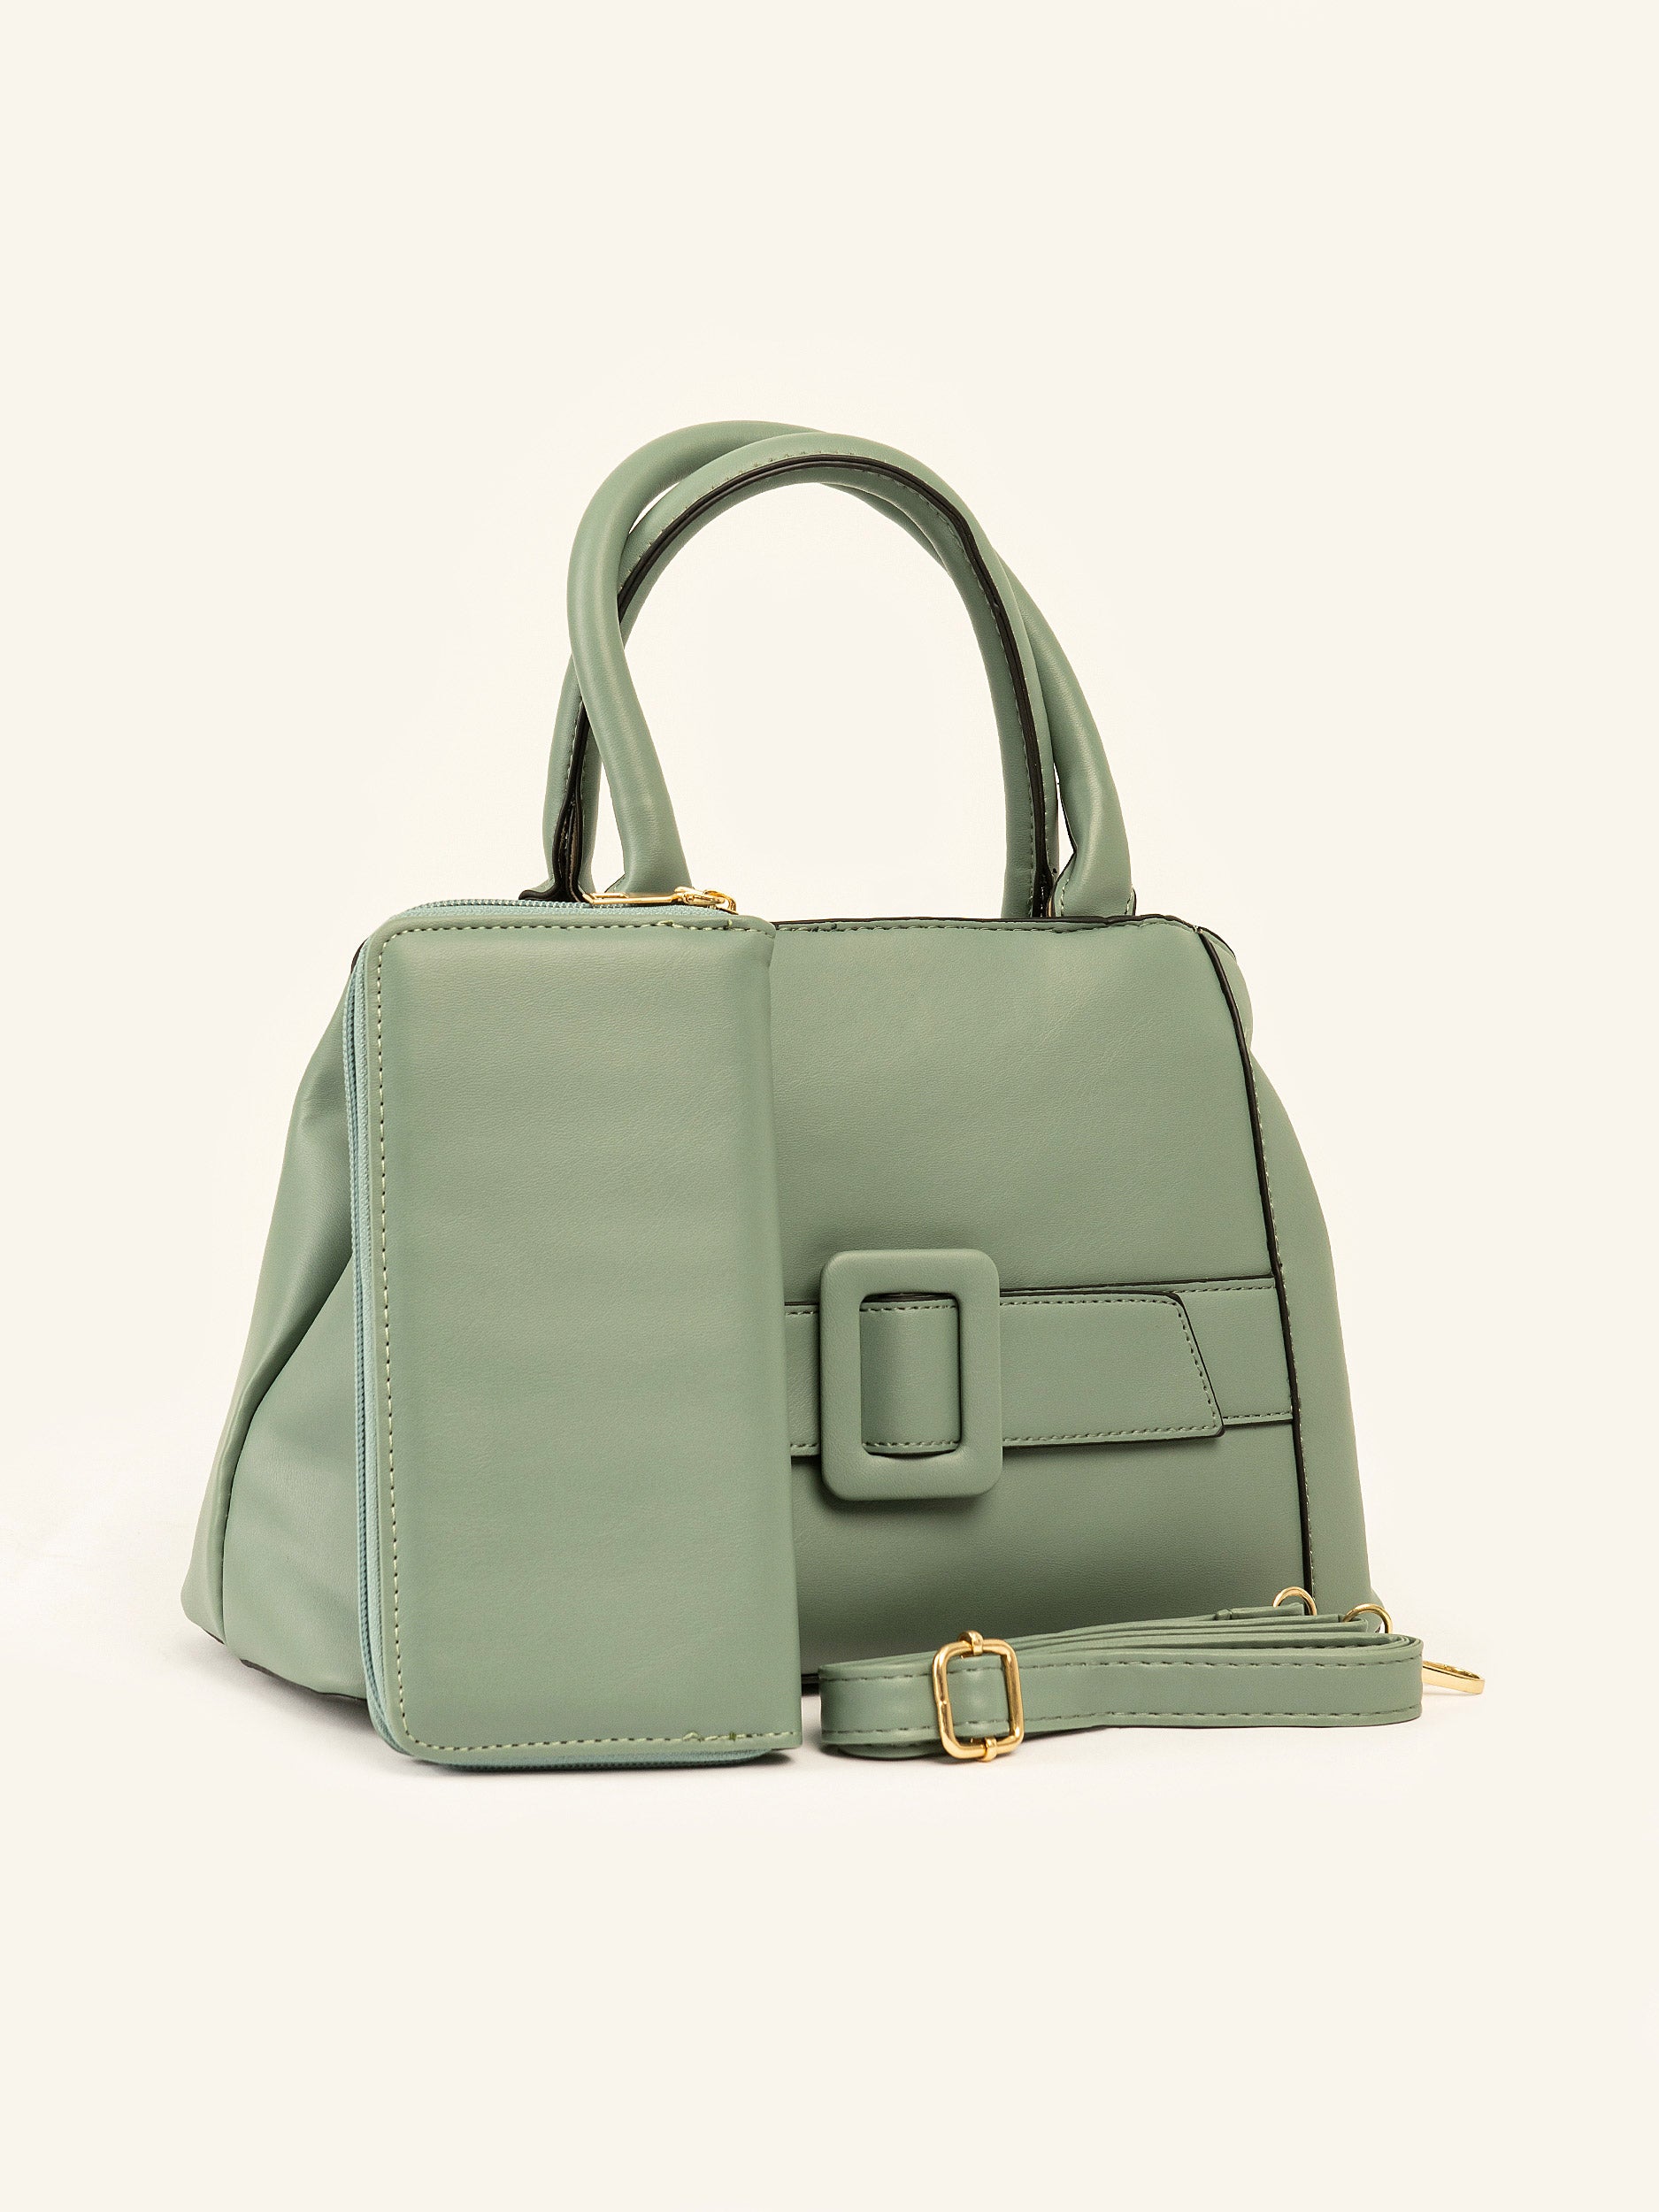 Buckled Strap Handbag – Limelightpk